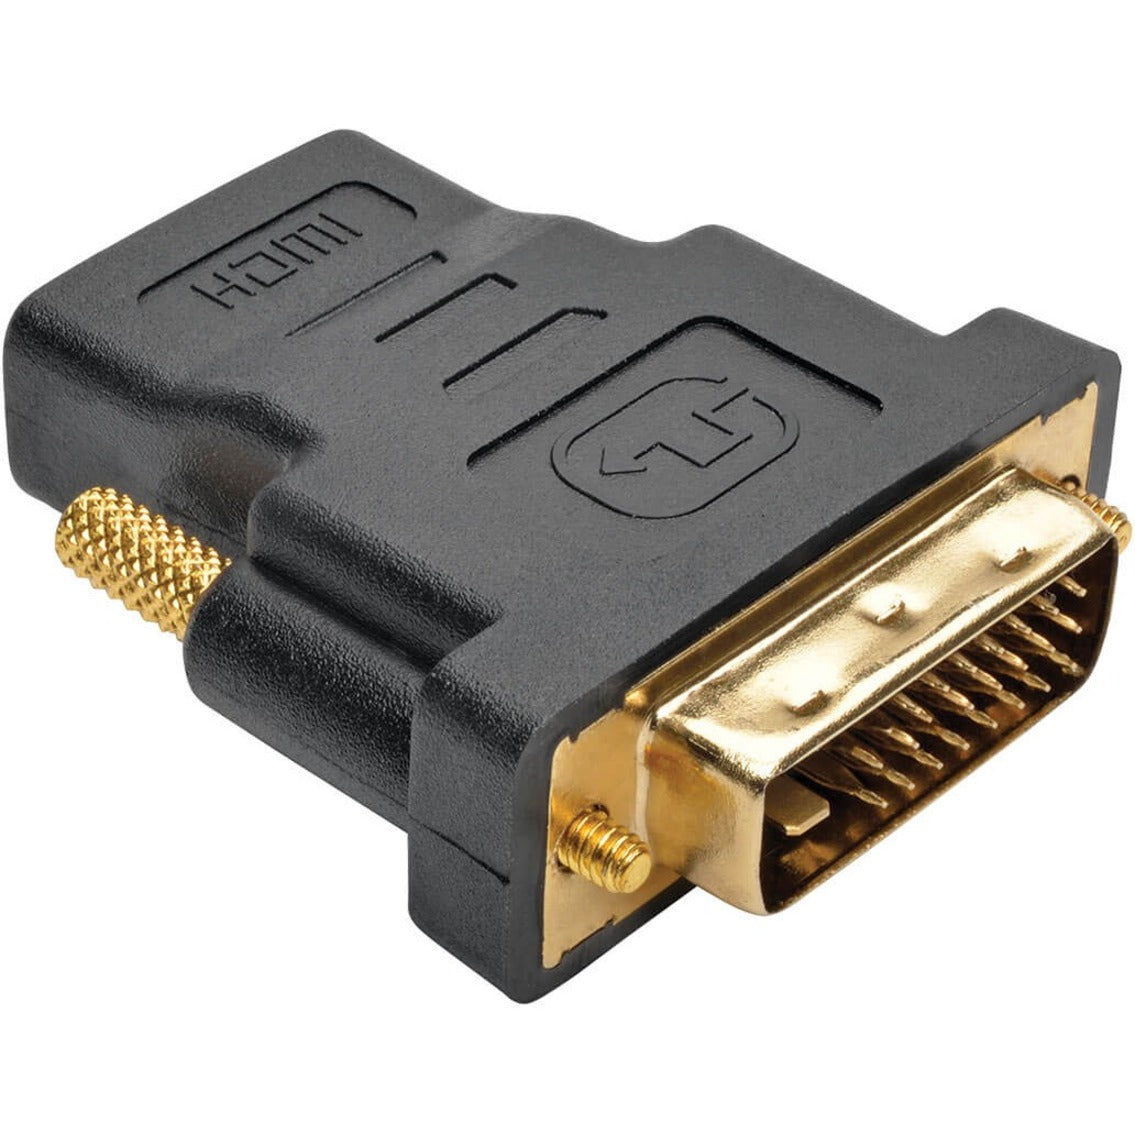 Tripp Lite P782-006-DH HDMI/DVI/USB KVM Cable Kit, 6 ft.